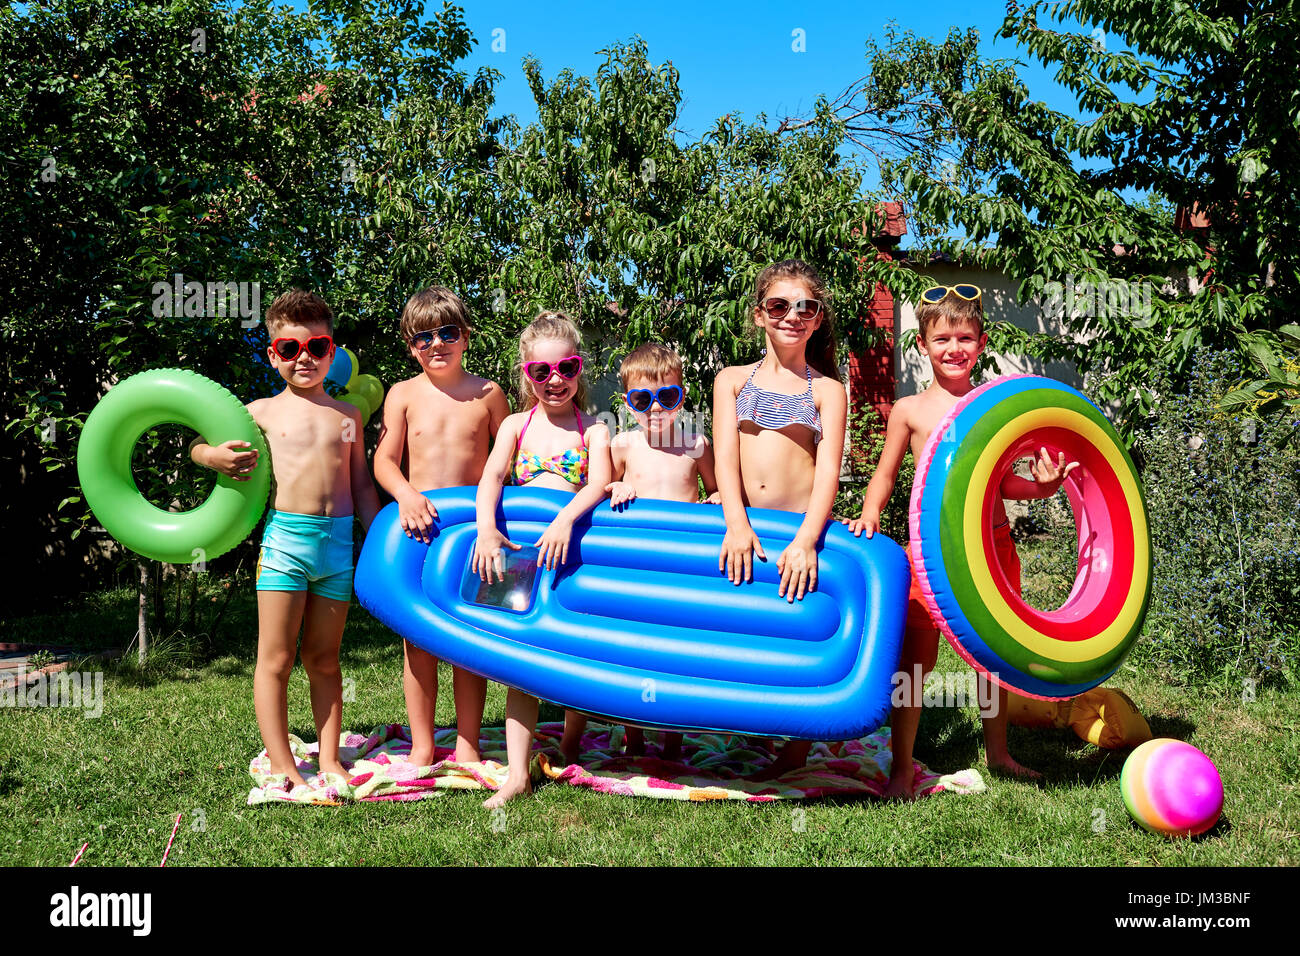 Eine Gruppe von Kindern in Badeanzügen im Sommer Stockfoto